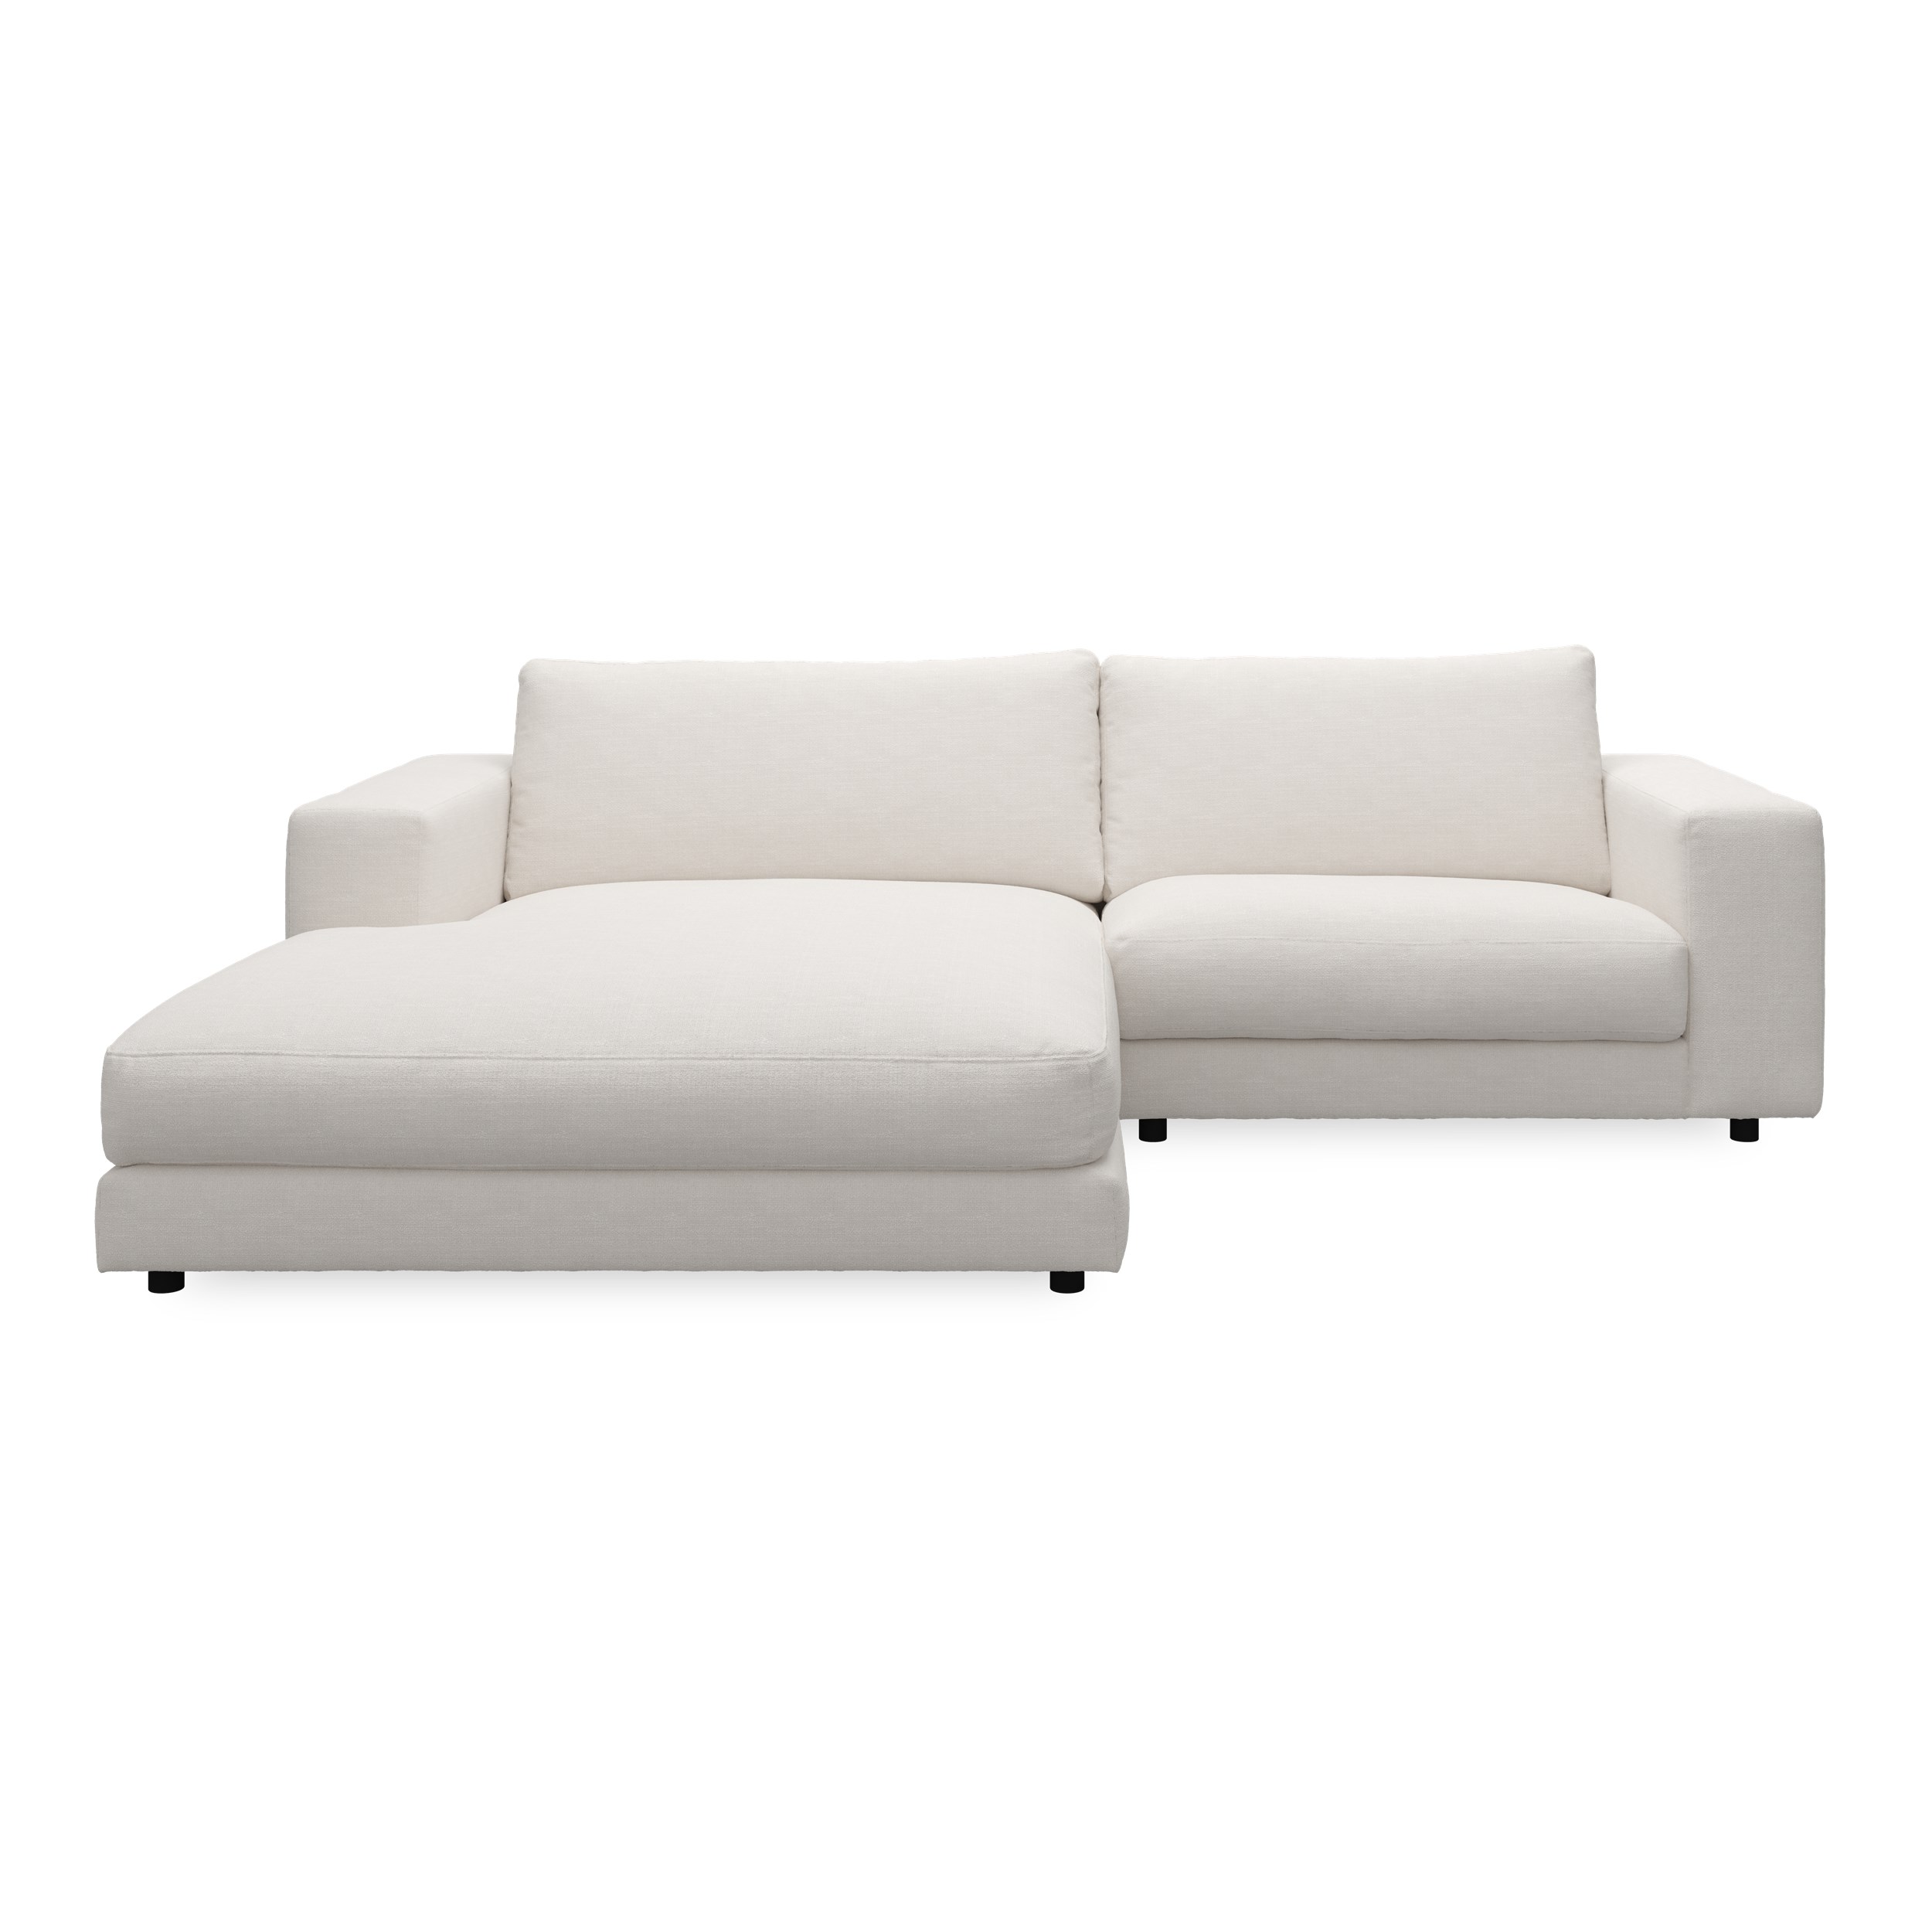 Bennent vänstervänd soffa med schäslong - Picasso Natur klädsel, ben i svart plast och S:skum/fib/din/sili R:Dun/skum